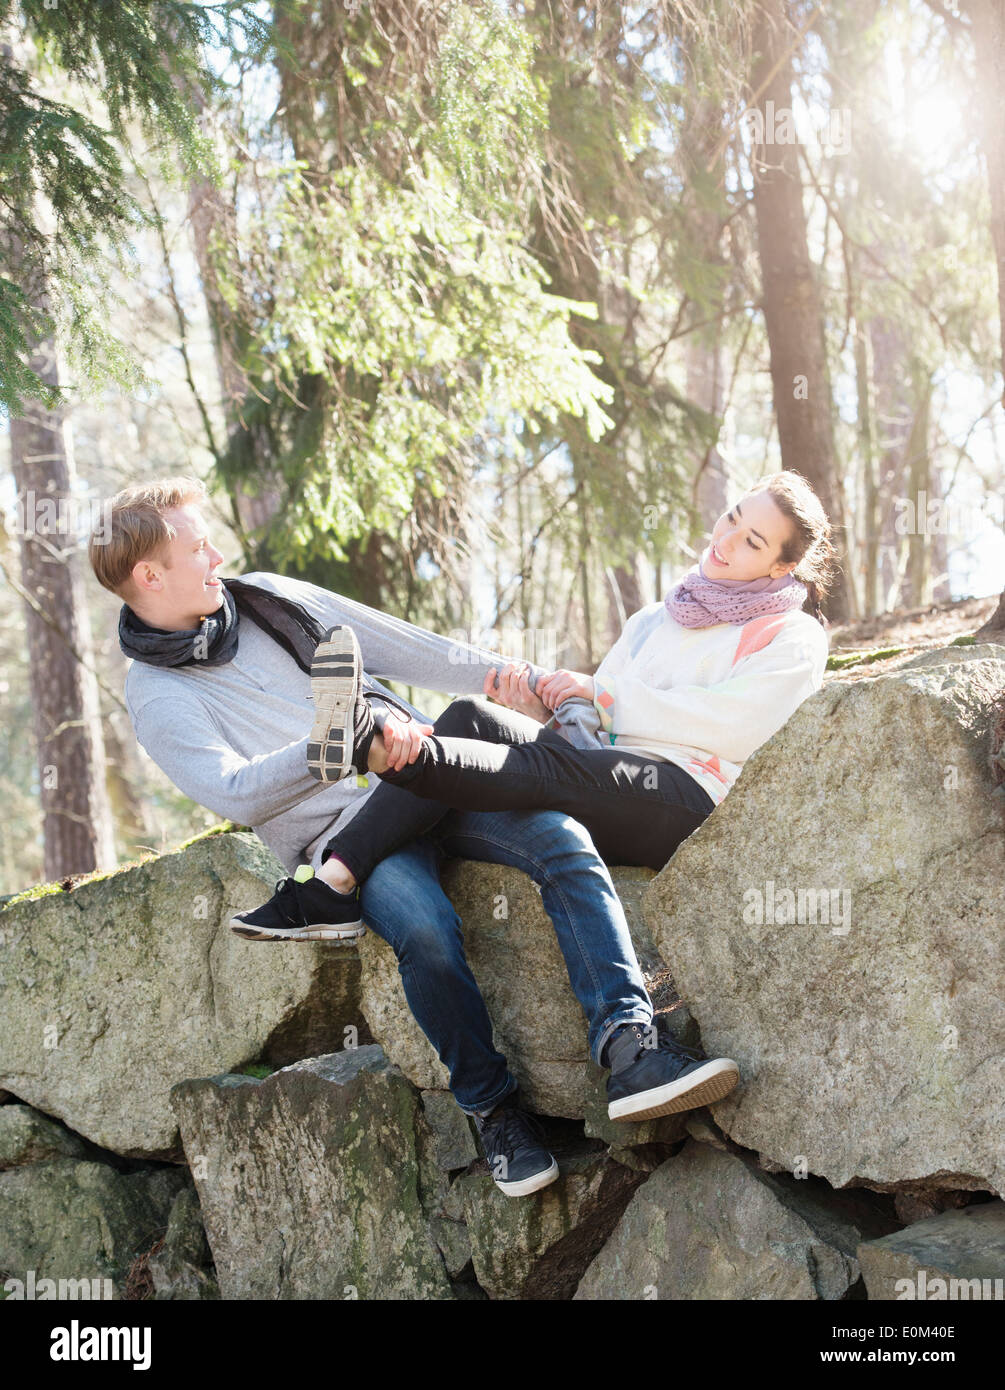 Jeune couple dans la nature repose sur de gros rochers dans les bois lors d'un trek. Relations sérieuses in ludique sur le bord d'un gros rocher. Banque D'Images